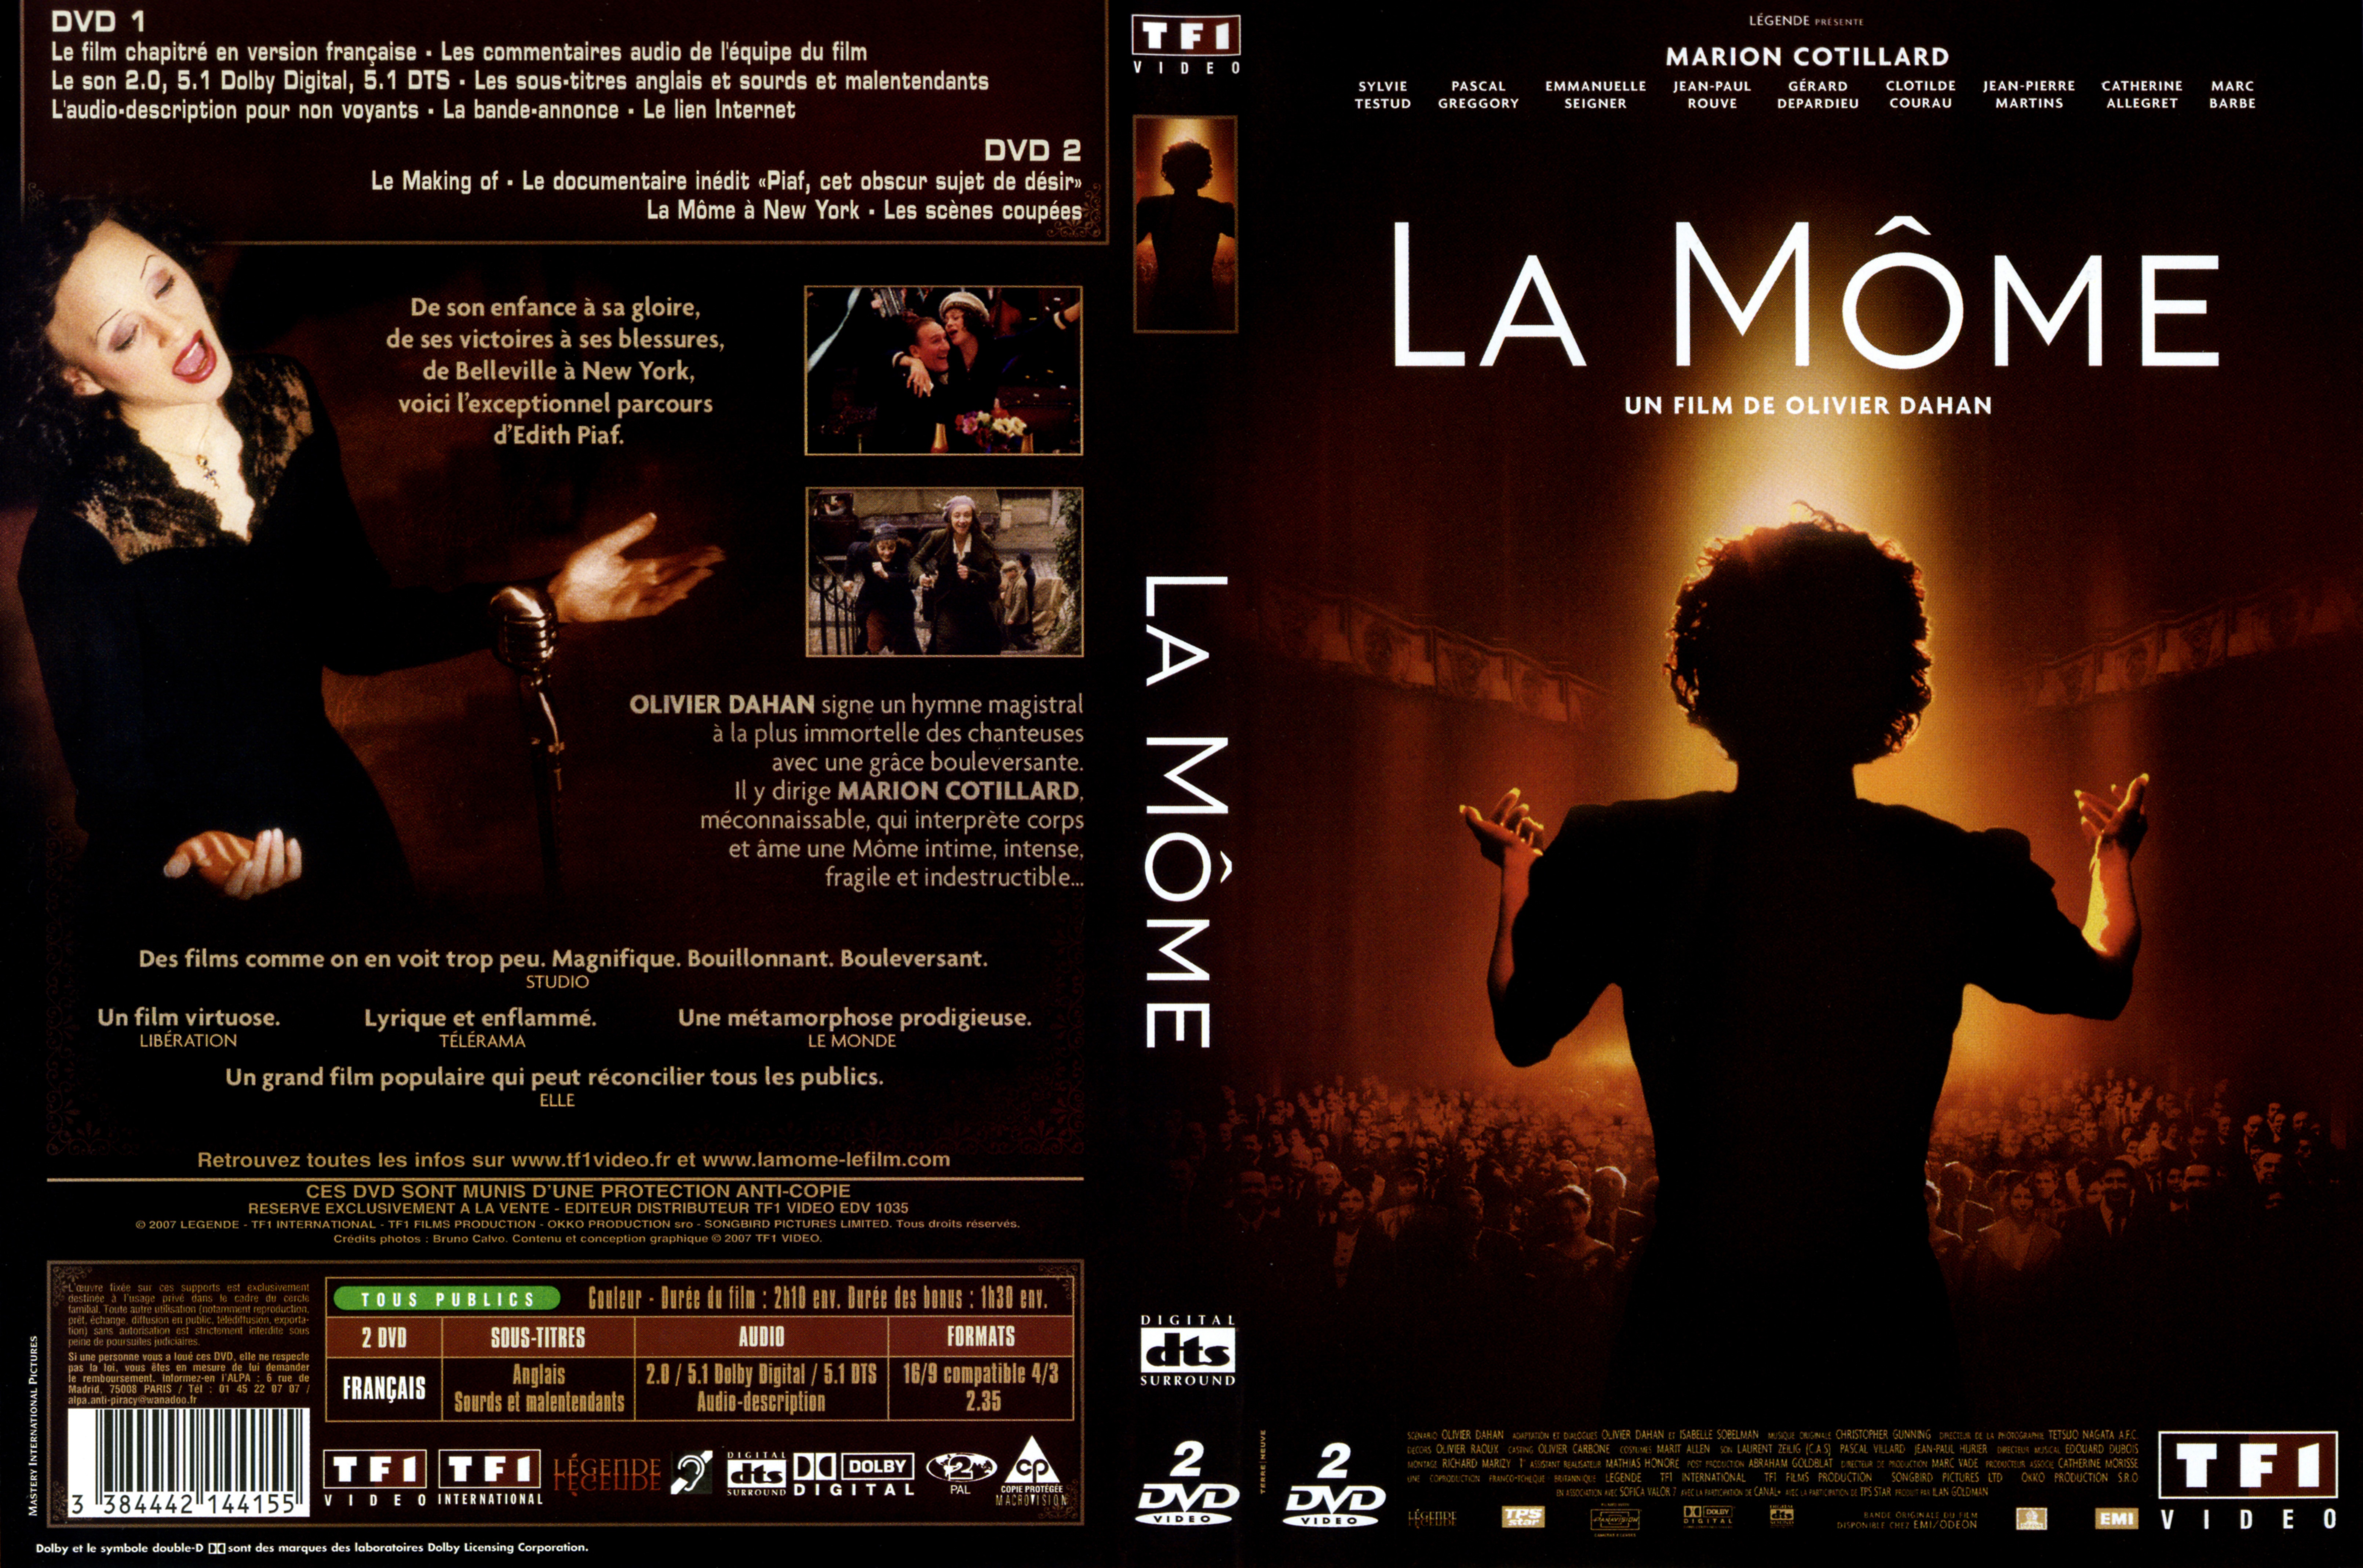 Jaquette DVD La mome v2